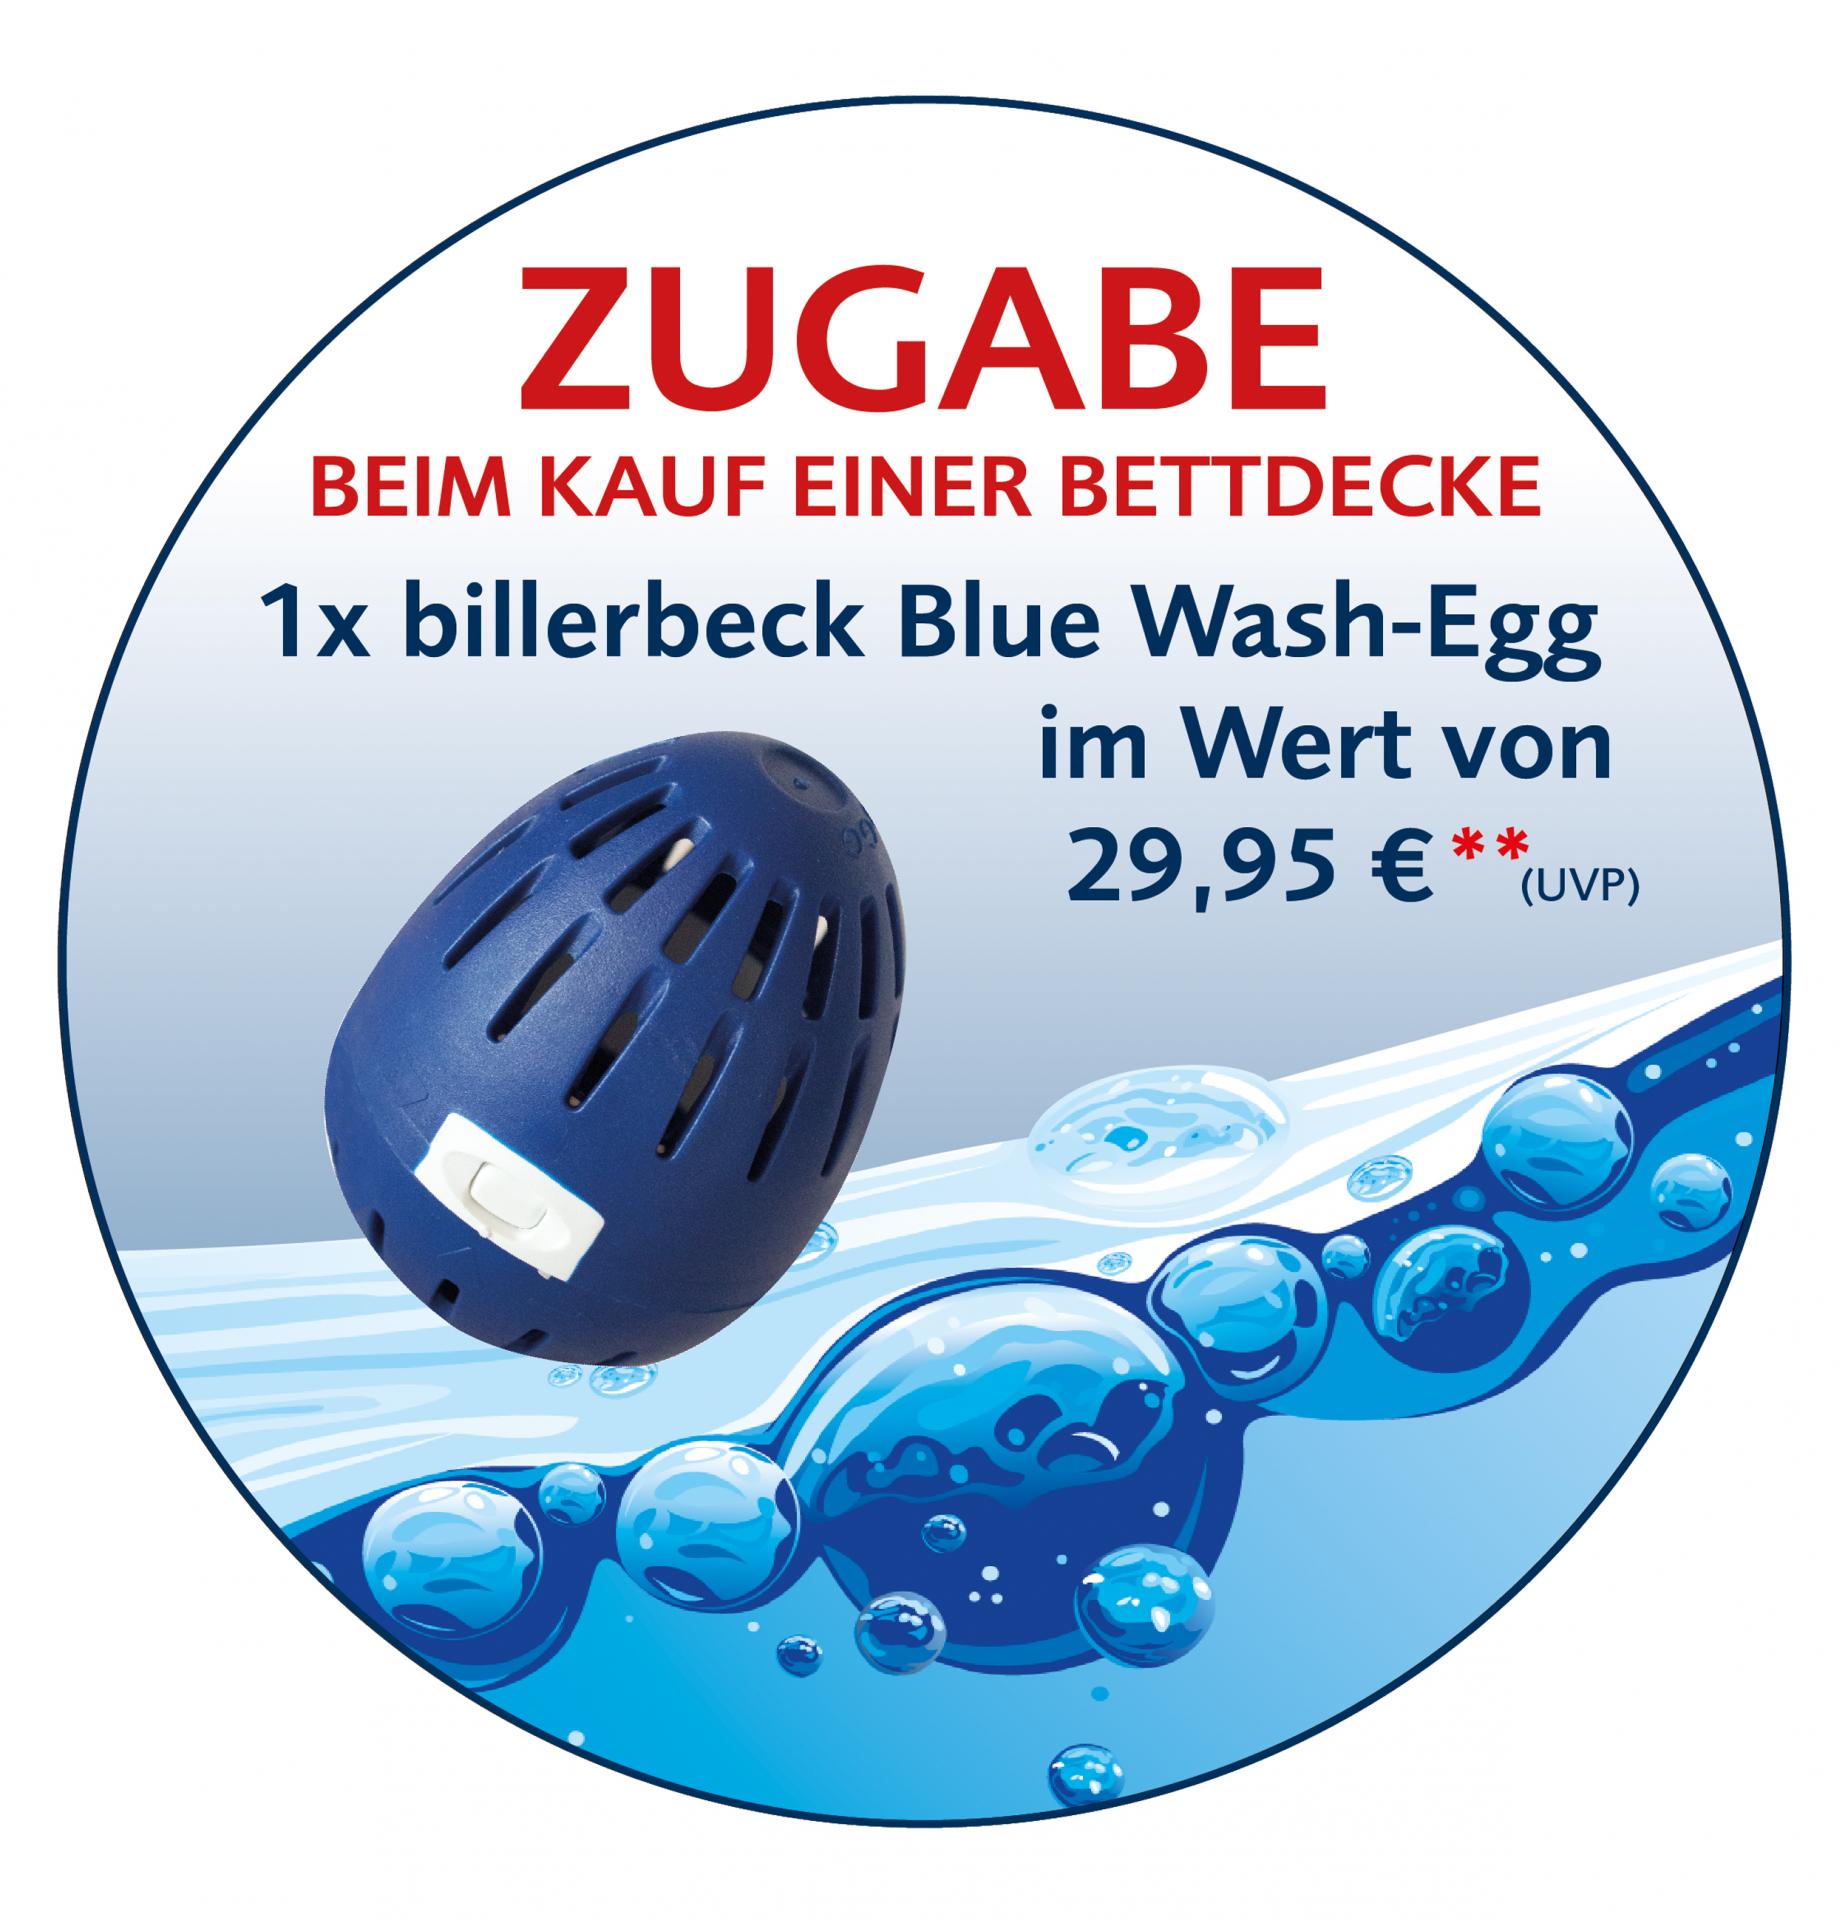 billerbeck-blue-wash-egg_bio-waschmittel_zugabe-beim-kauf
